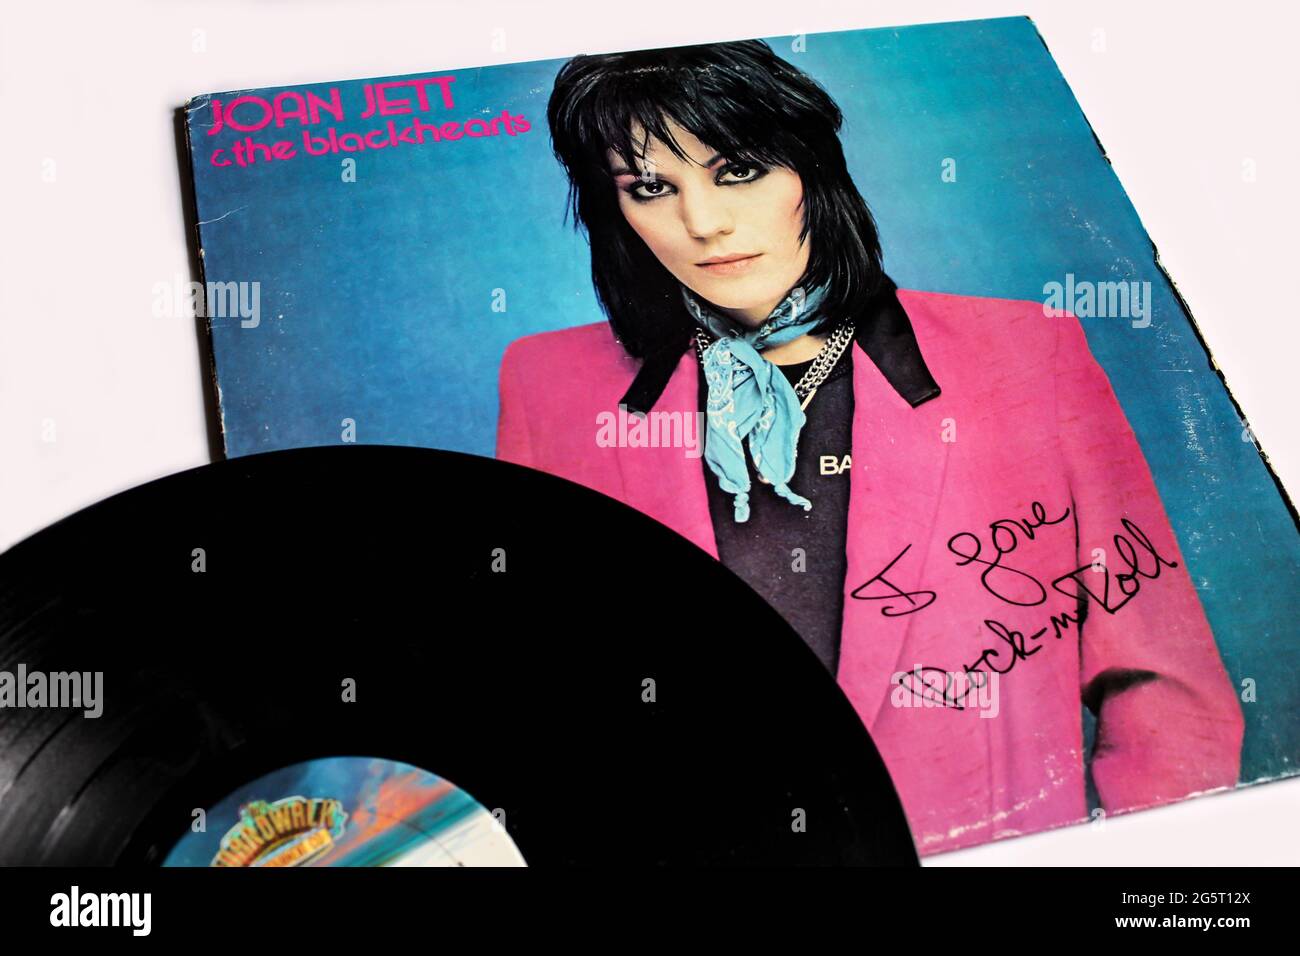 Hard rock and punk rock band, Joan Jett & The Blackhearts album musicale su disco LP con dischi in vinile. Titolo: Copertina dell'album i Love Rock n Roll Foto Stock